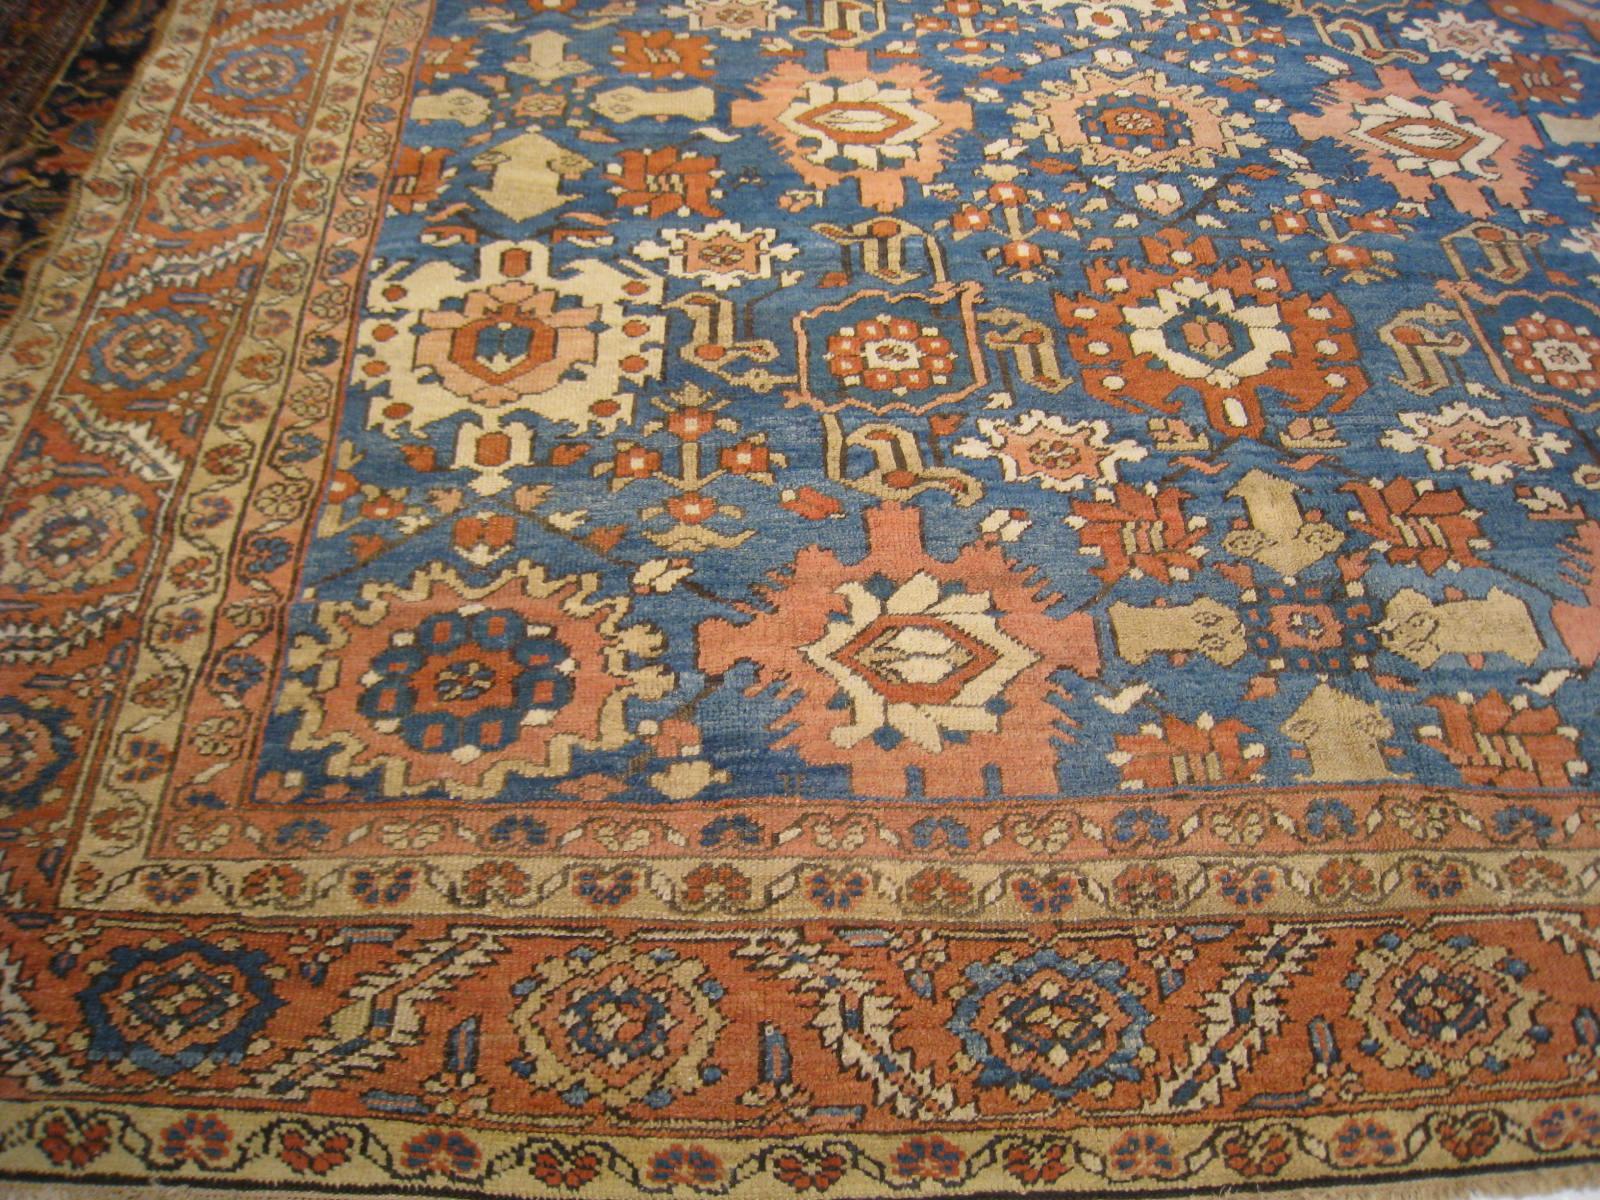 Heriz ist eine Stadt im Nordwesten Persiens (Iran), in der seit dem 19. Jahrhundert Teppiche hergestellt werden. Sie befindet sich auf dem Berg Sabalan, einer wichtigen Kupferquelle, deren Gipfel 15.784 Fuß hoch ist. Die Wolle, die für diese